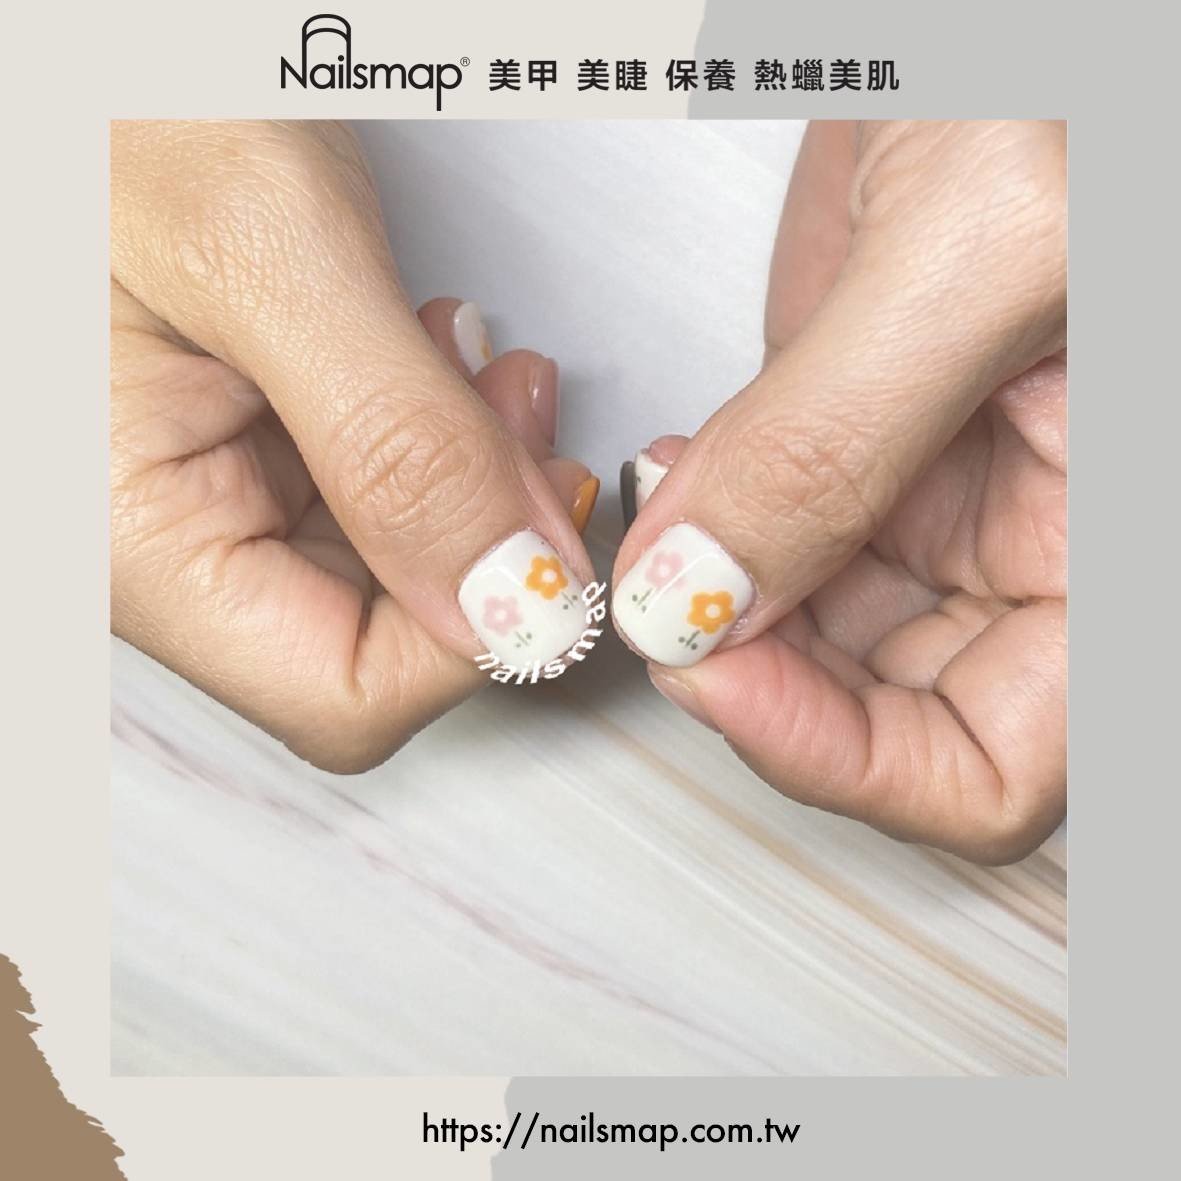 時下韓系美甲流行款式之一，清新小花讓指尖耀眼可愛